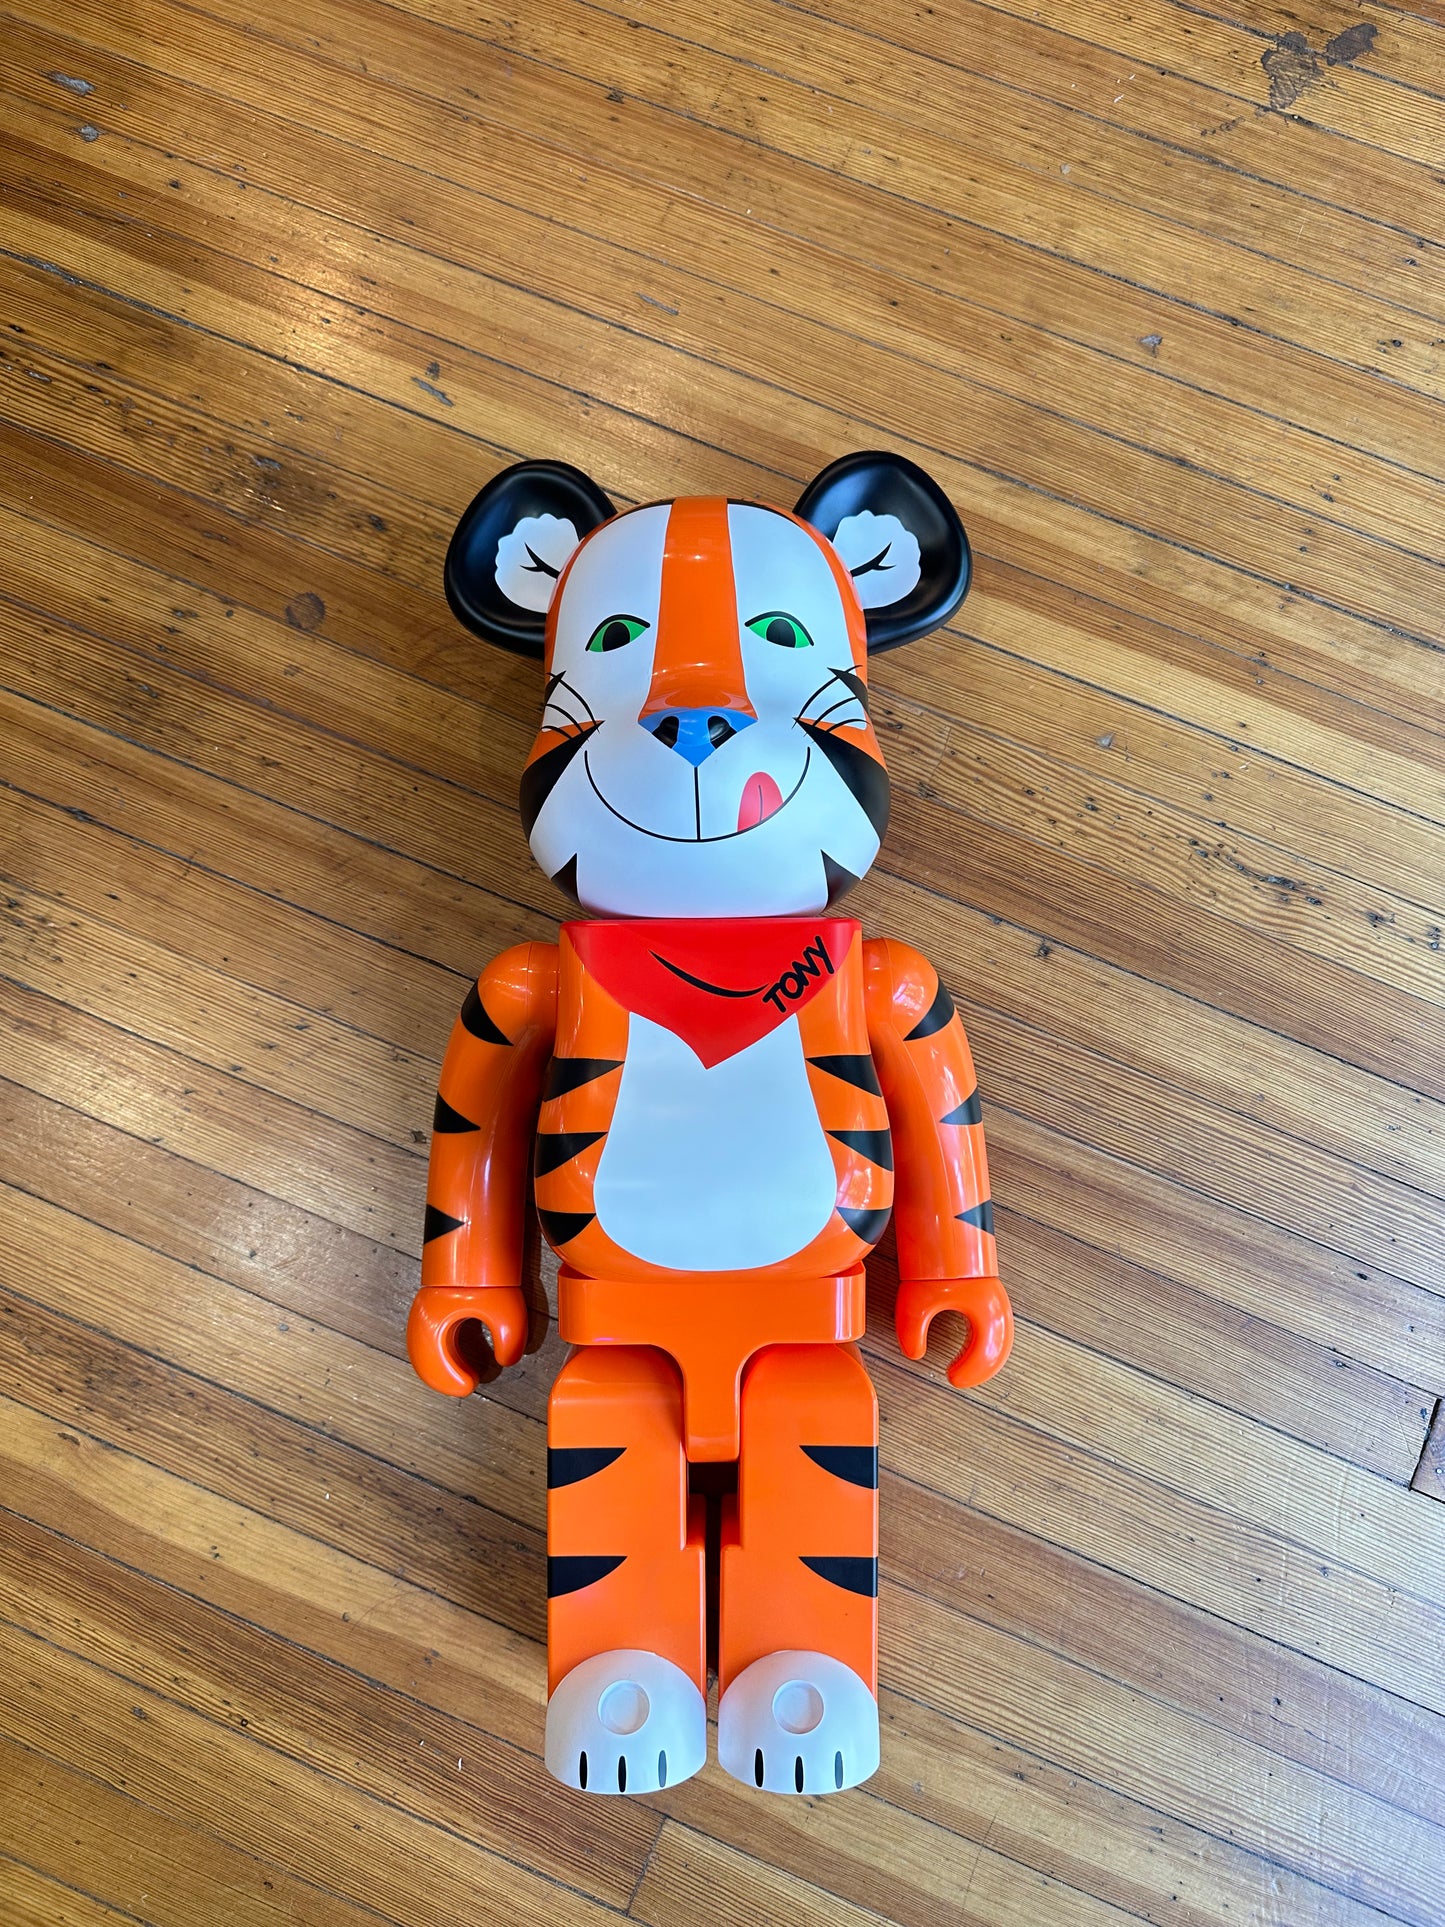 BearBrick “Tony The Tiger” 1000%